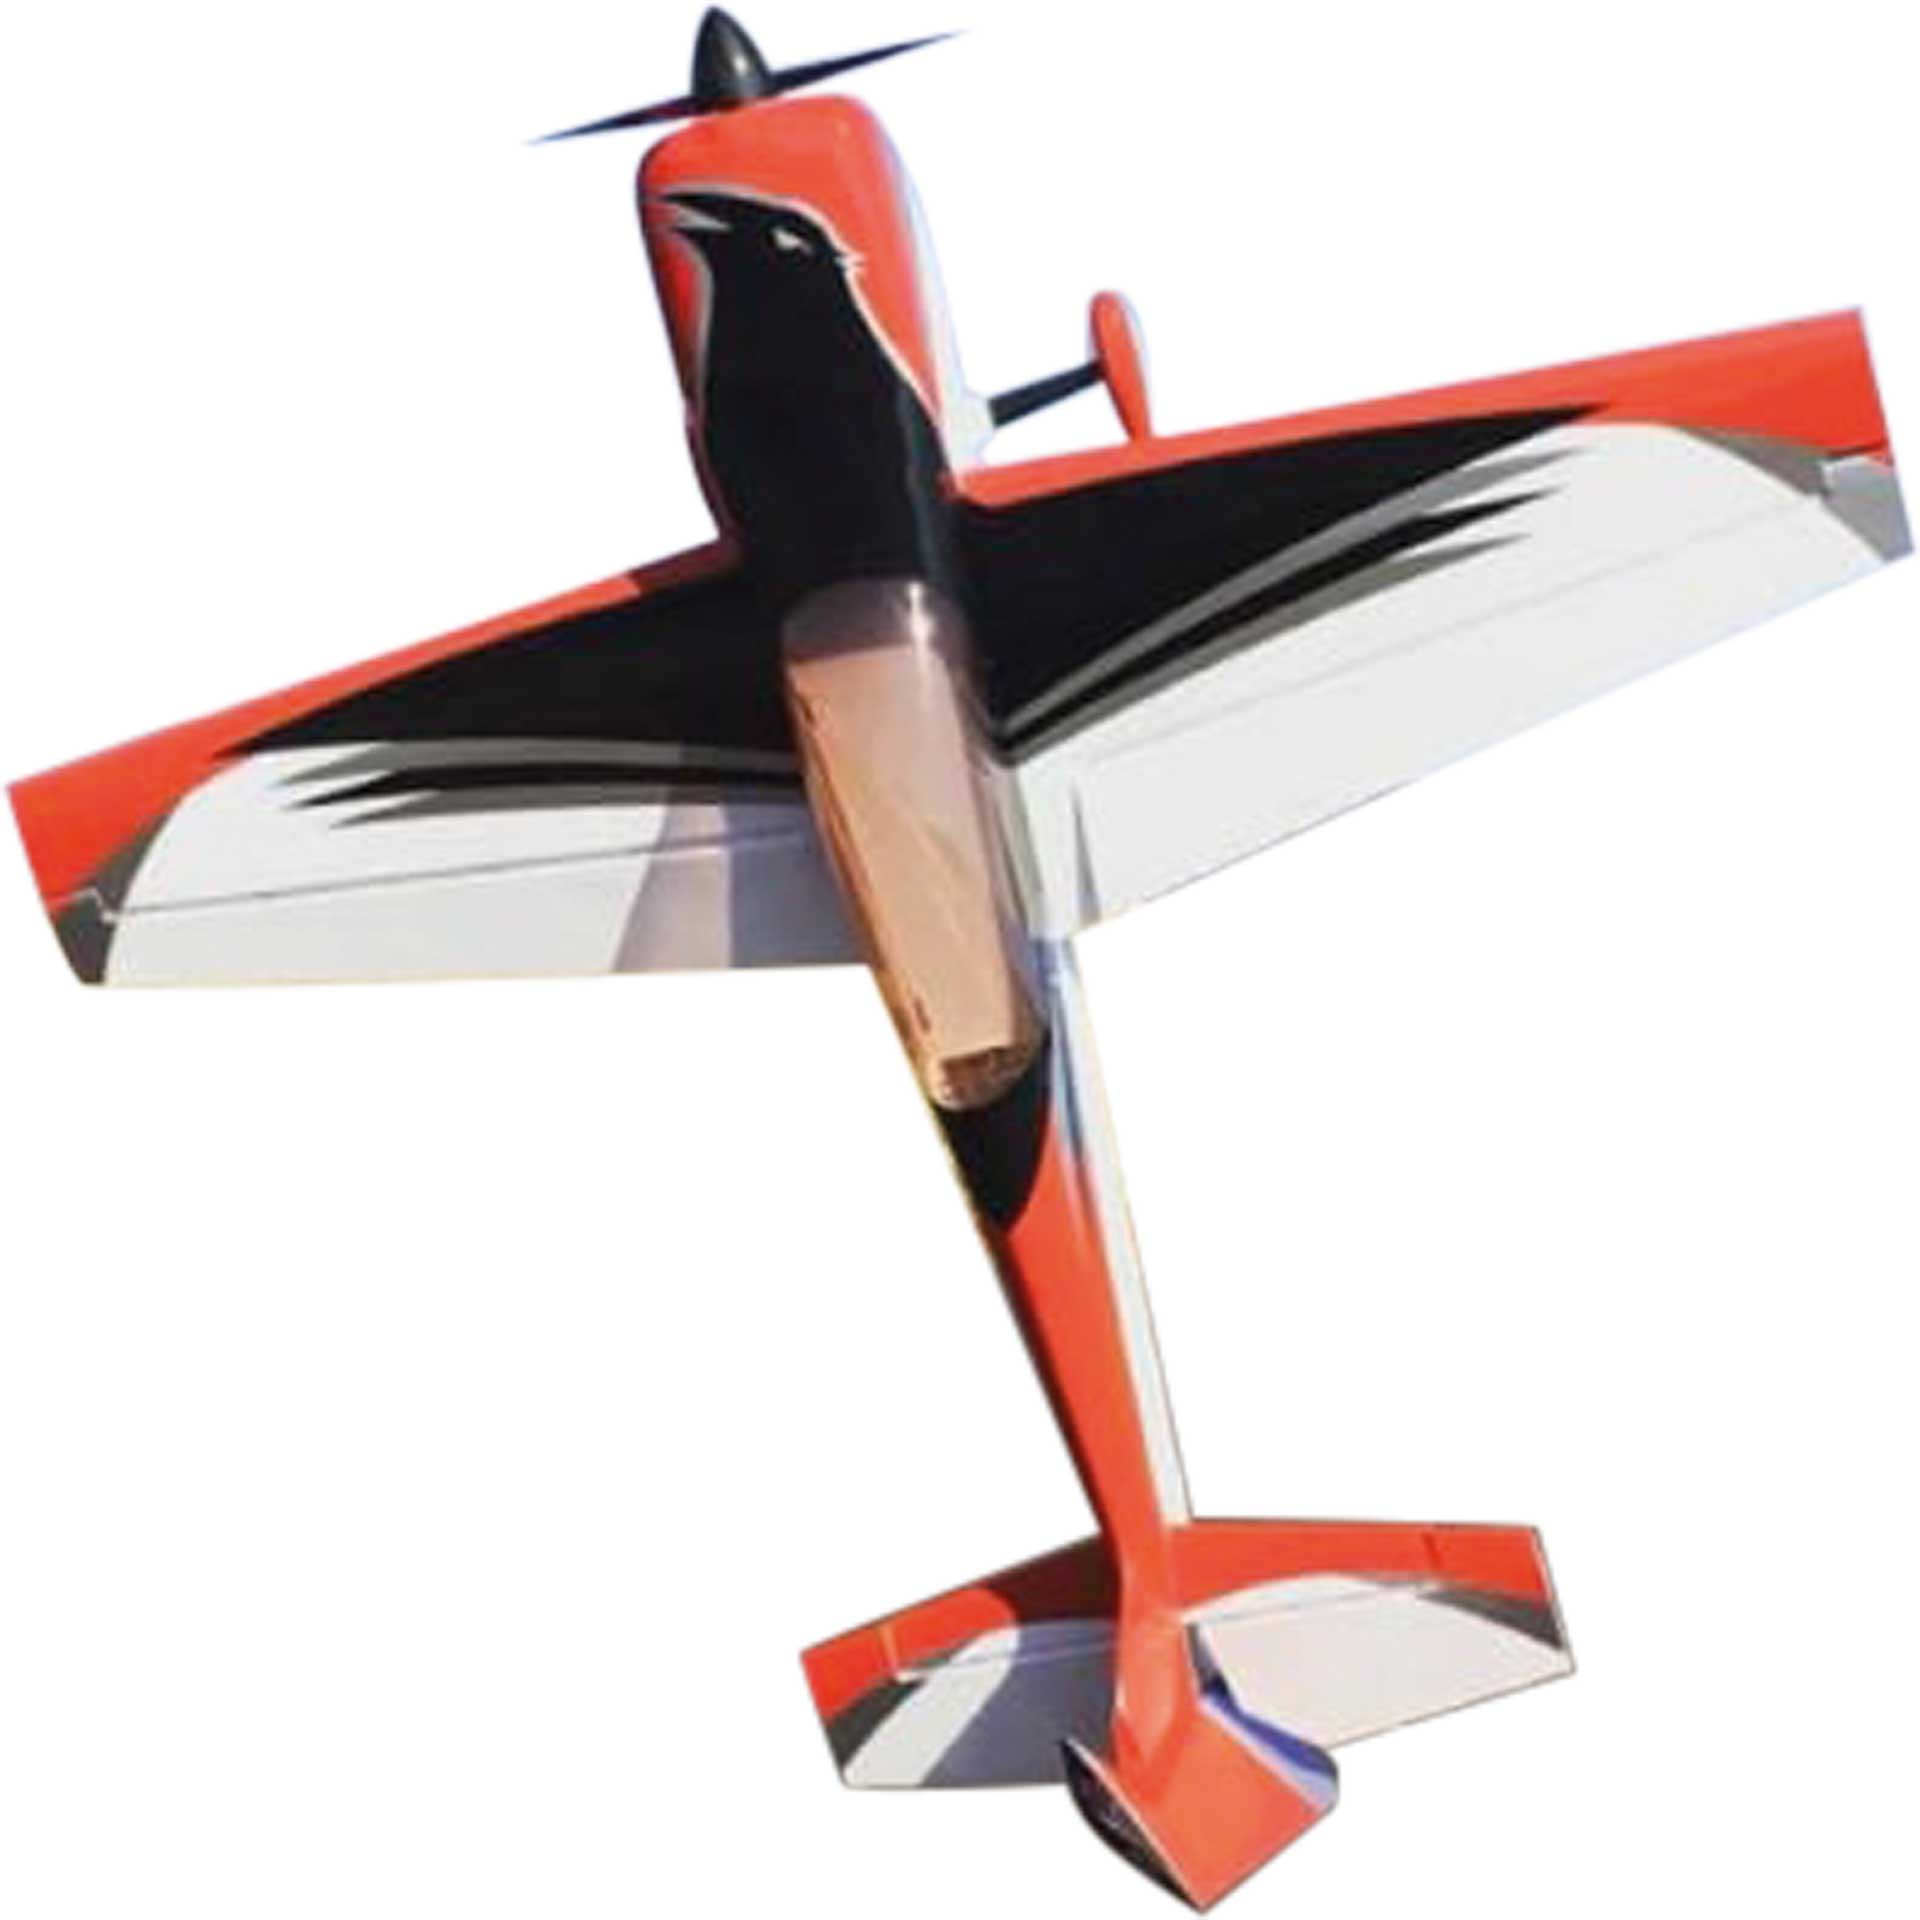 AJ AIRCRAFT Raven DT ARF 92" Rouge Modèle de voltige 2,33m ( double taper wing )